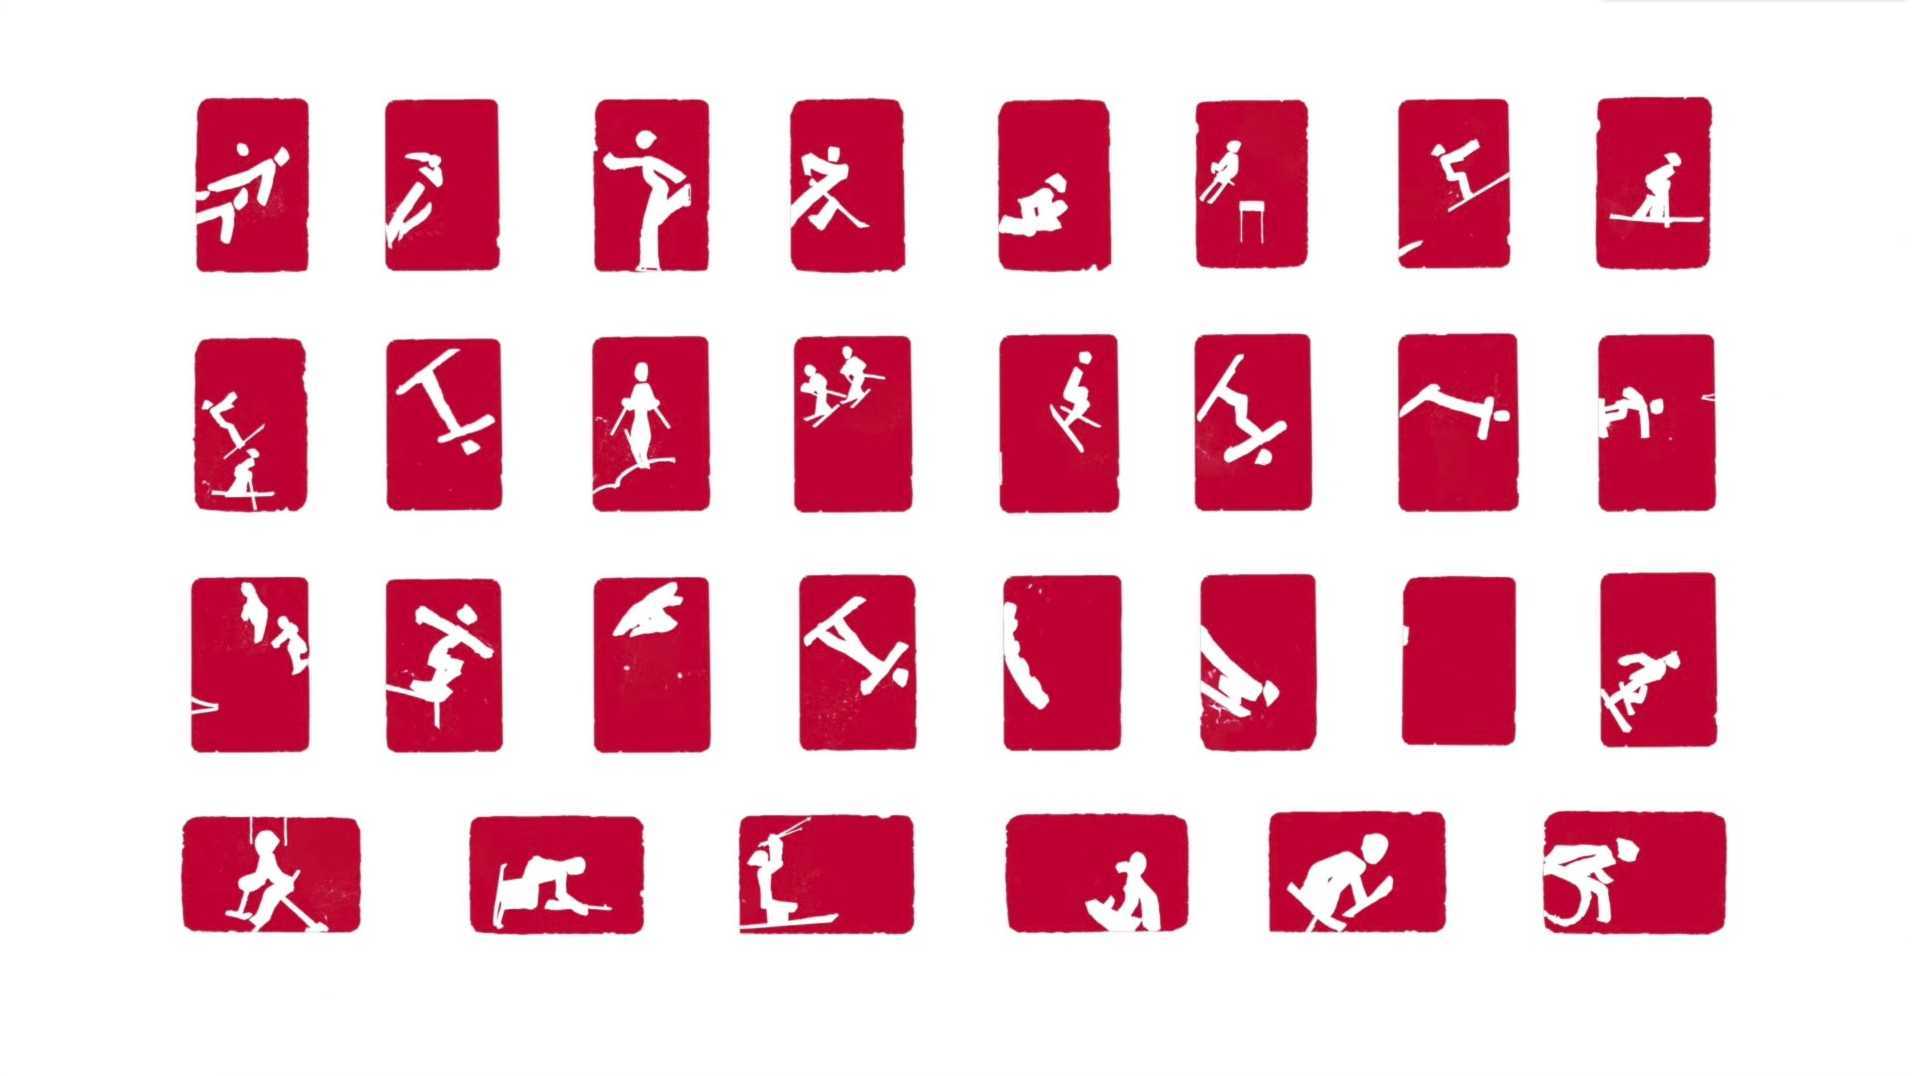 脑洞！《北京冬奥会&冬残奥会体育图标》